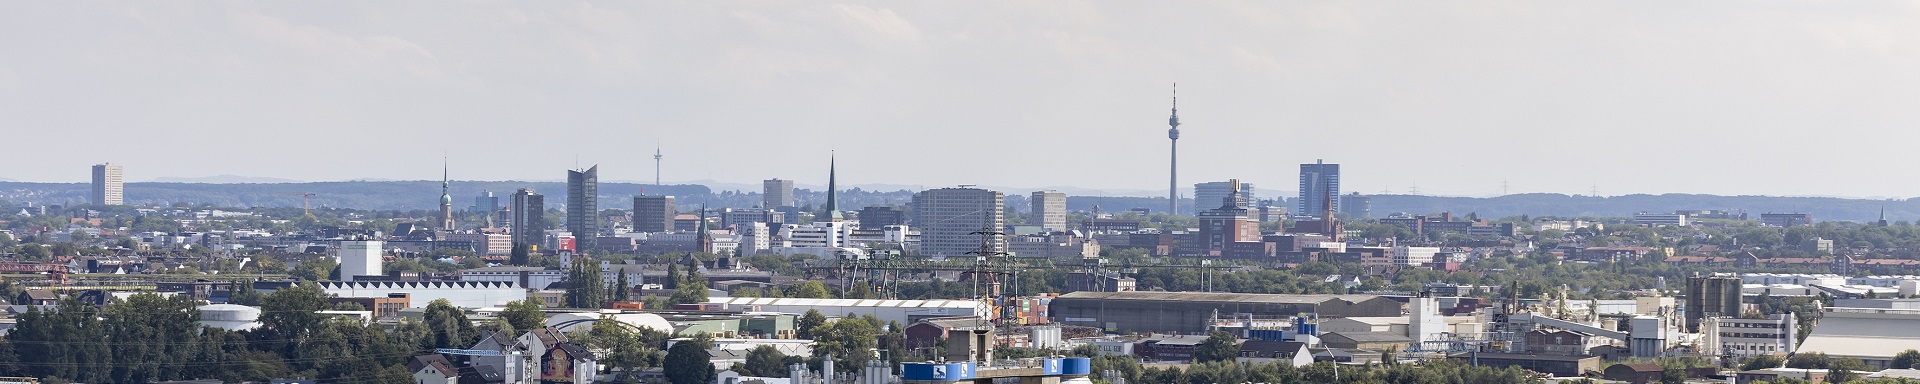 Eine Panoramaaufnahme von der Stadt Dortmund.